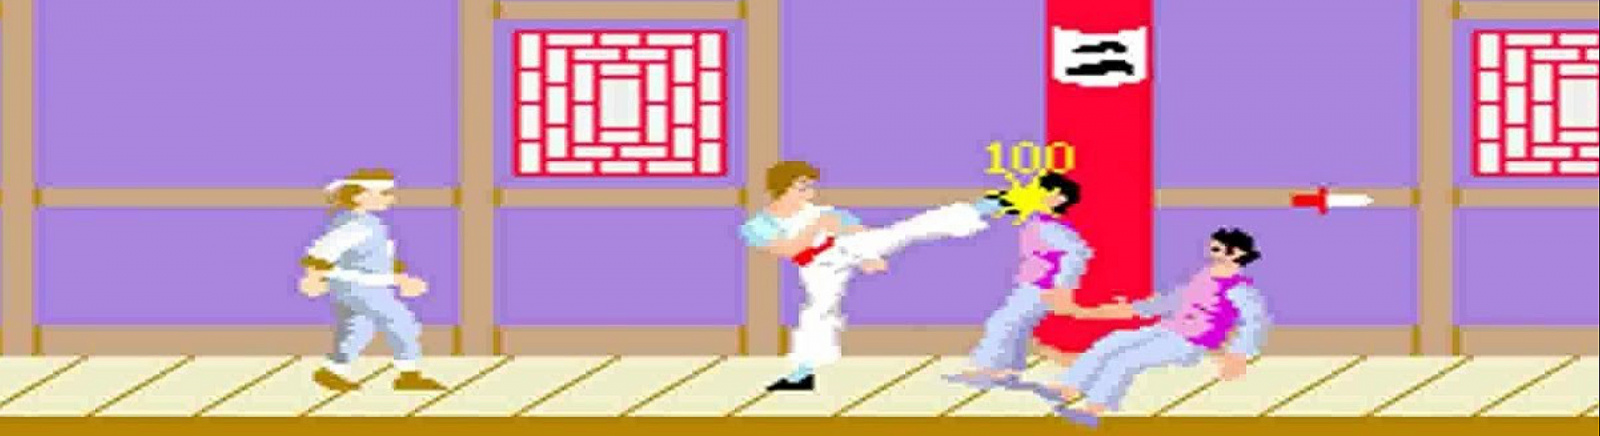 Дата выхода Kung-Fu Master (Kung Fu)  на NES, Commodore 64 и ZX Spectrum в России и во всем мире